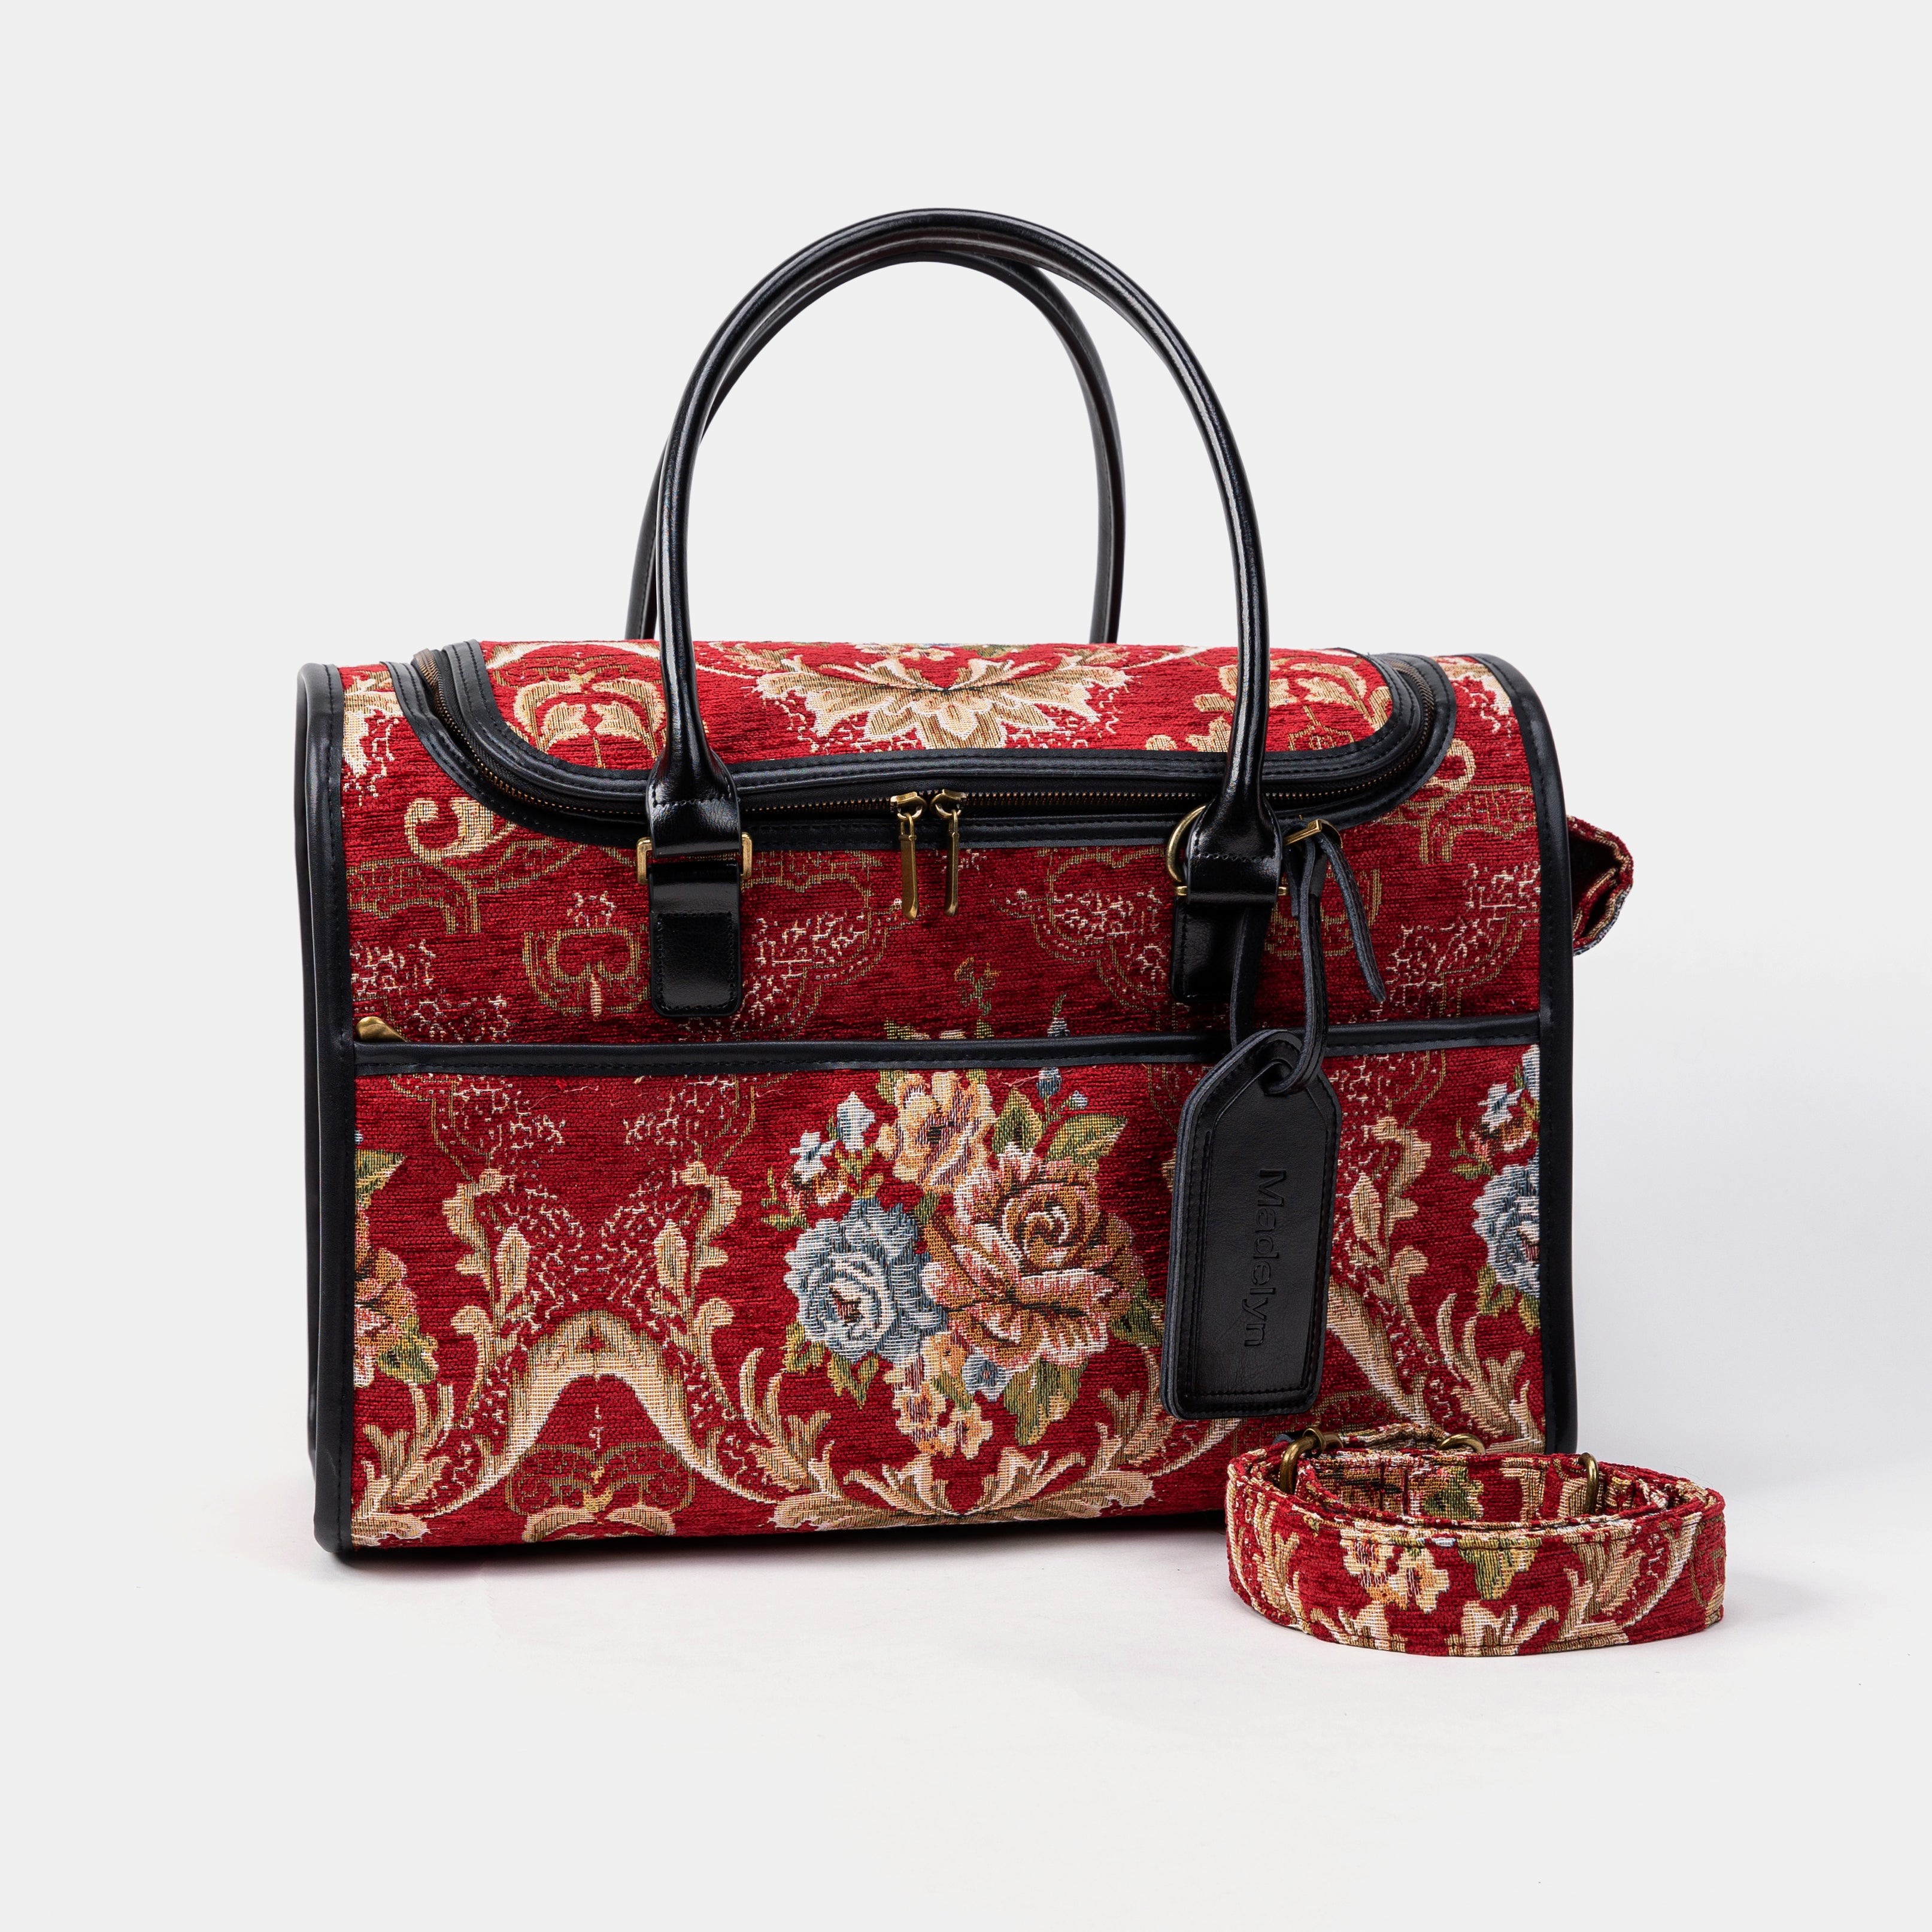 Travel Dog Carrier Bag Floral Red Shoulder Strap